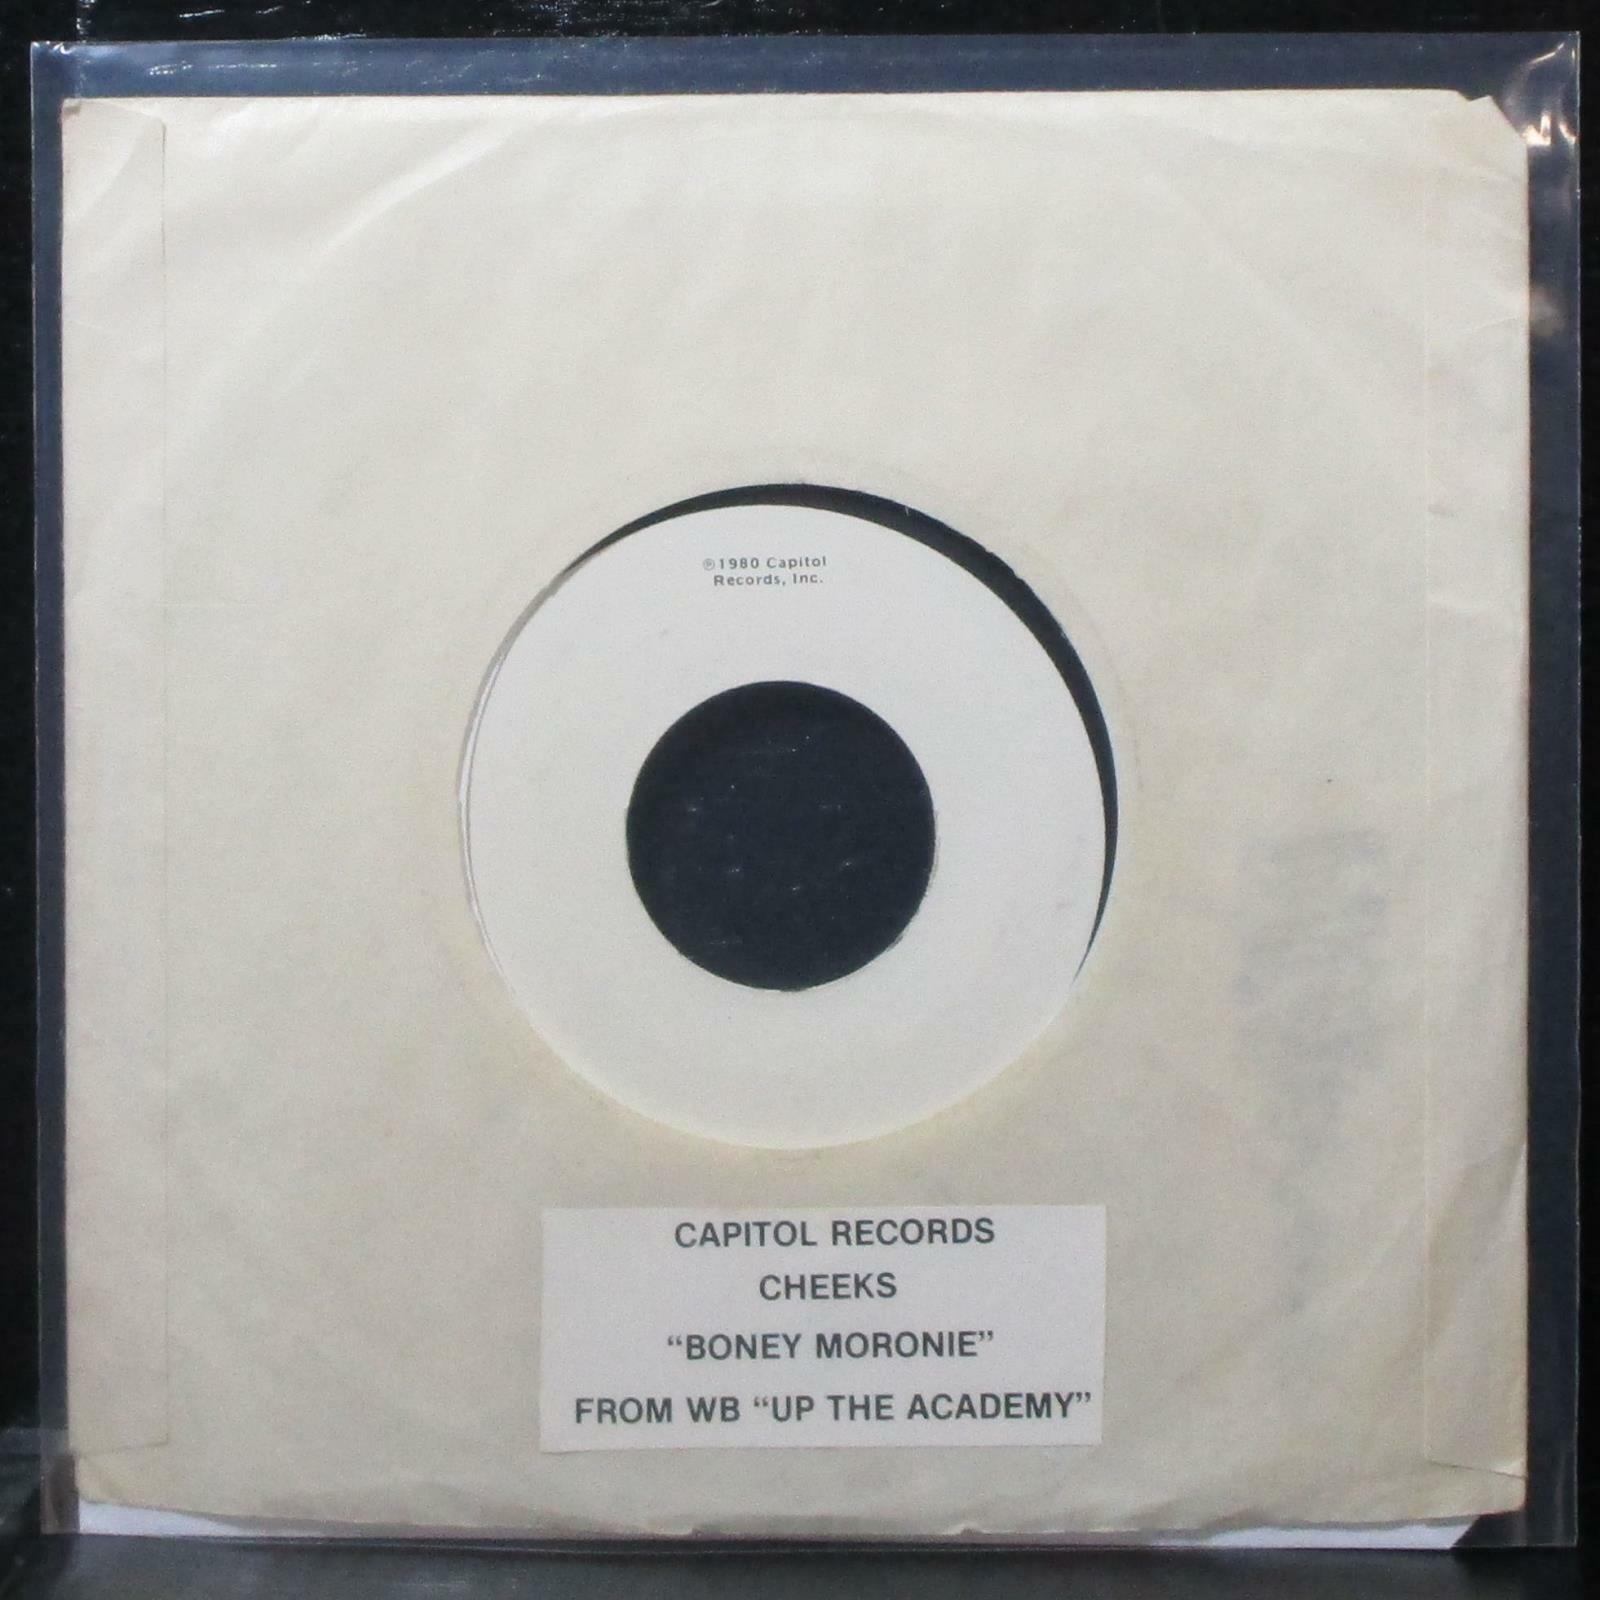 Cheeks - Boney Moronie 7" VG+ Test Pressing Vinyl 45 WB PRO-9406